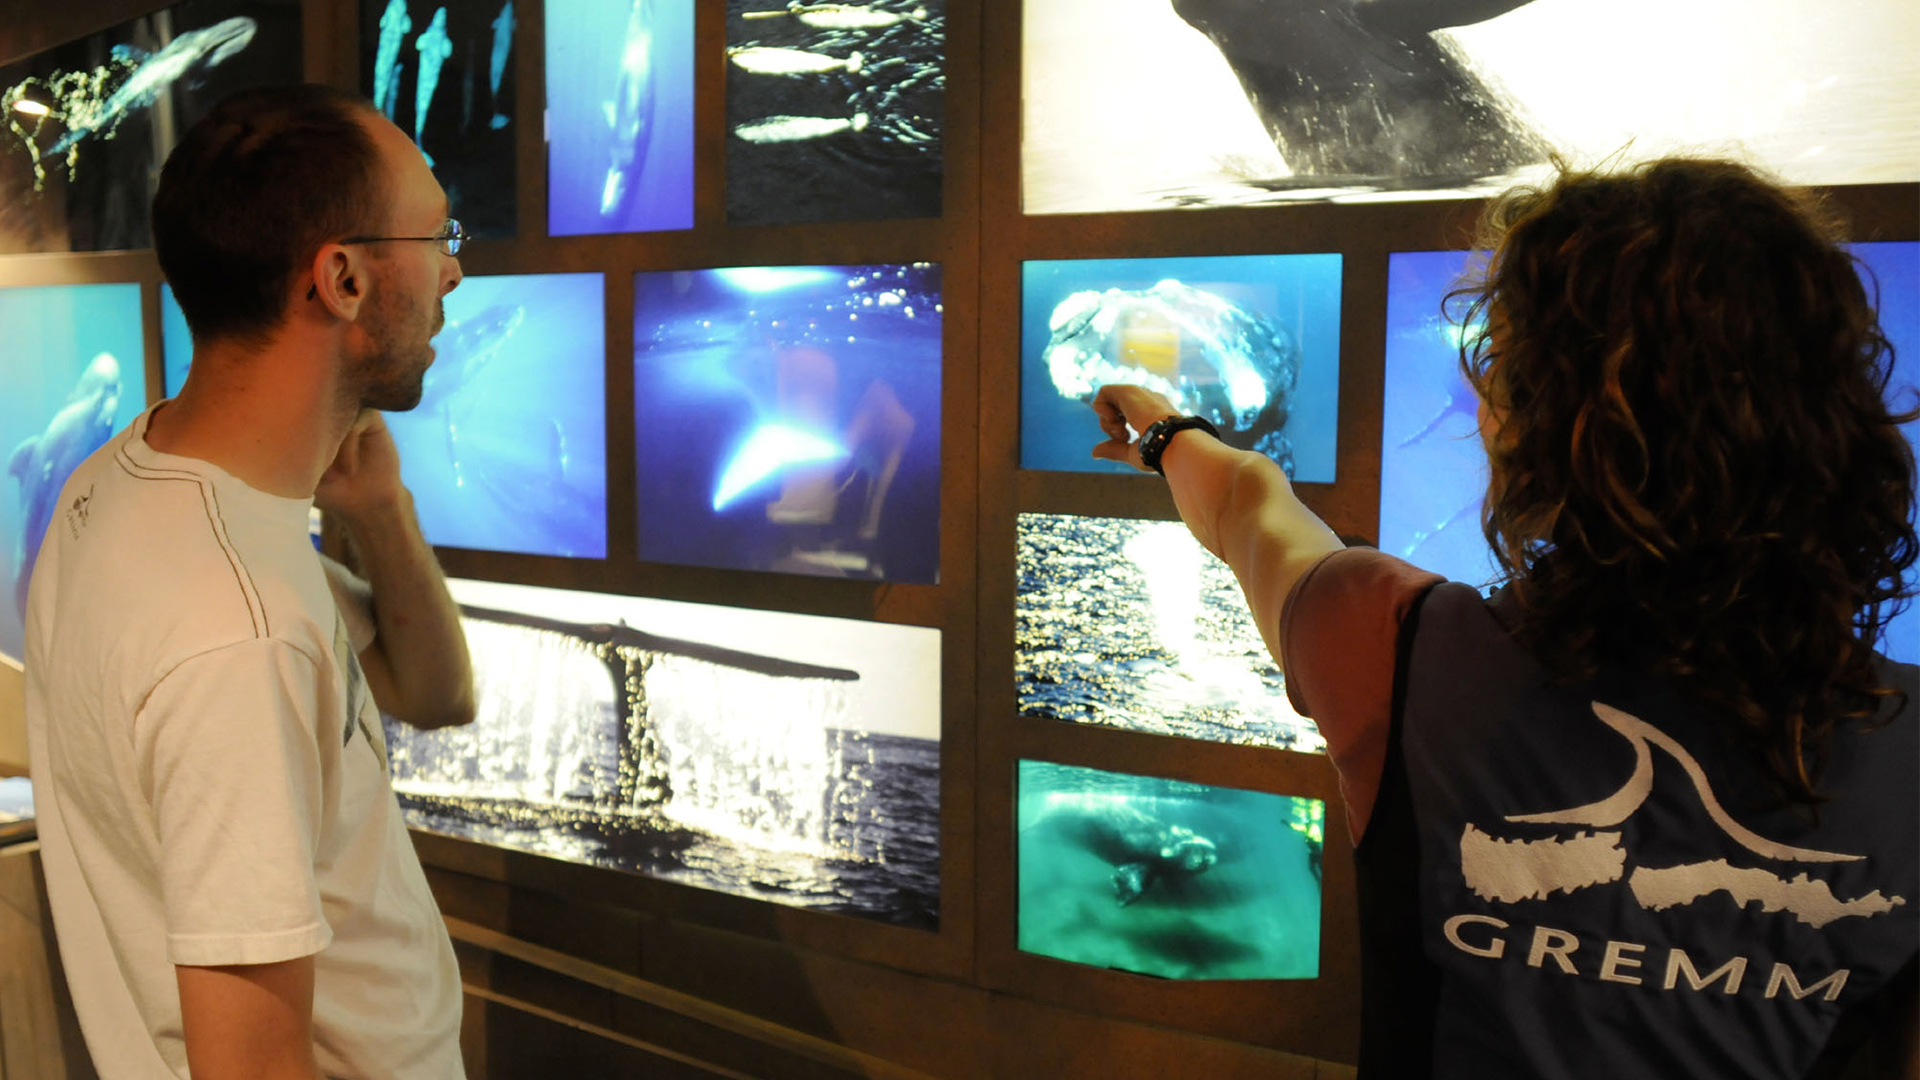 Une femme (portant une veste identifiée GREMM) pointe un élément sur un mur montrant plusieurs photos de baleines pendant qu’un homme regarde ce qu’elle pointe.